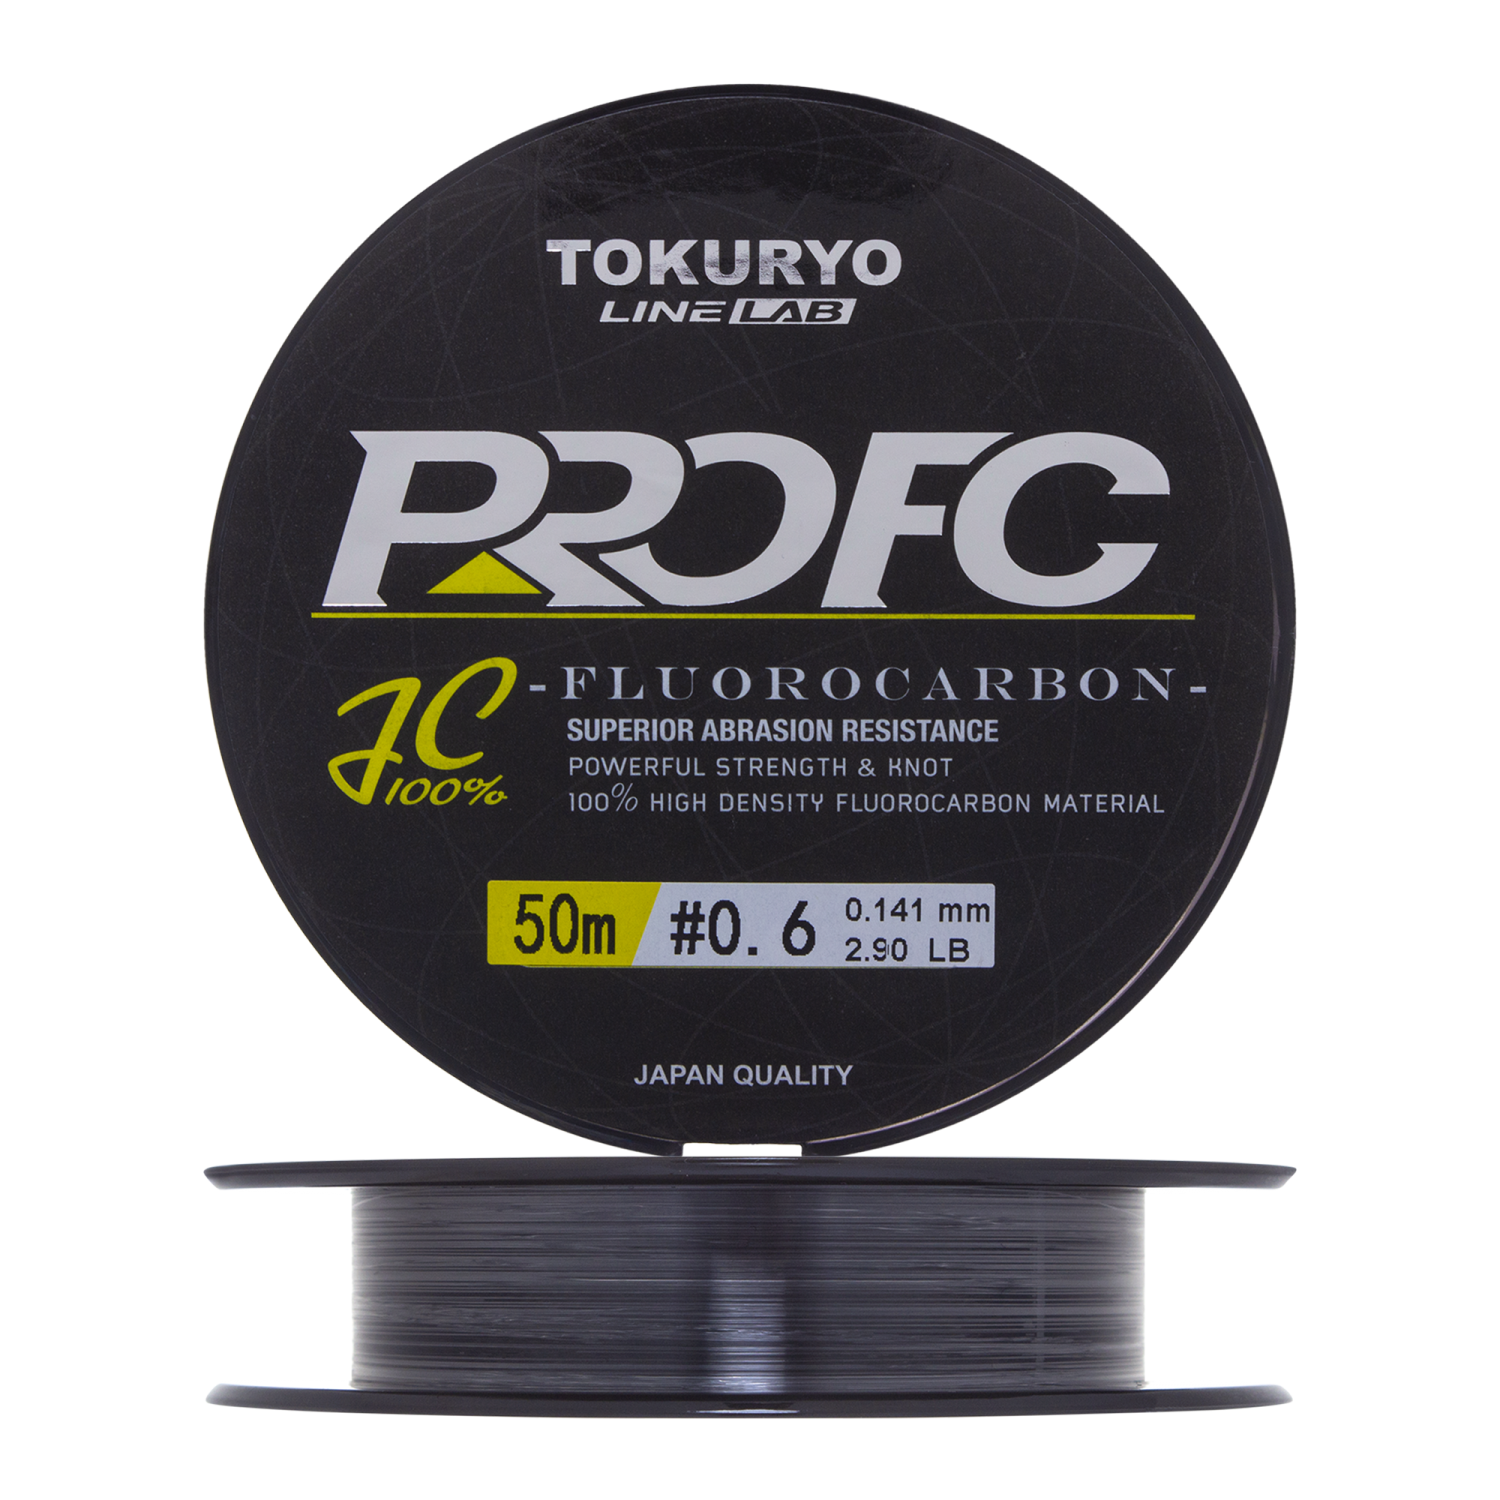 Флюорокарбон Tokuryo Fluorocarbon Pro FC #0,6 0,141мм 50м (clear)